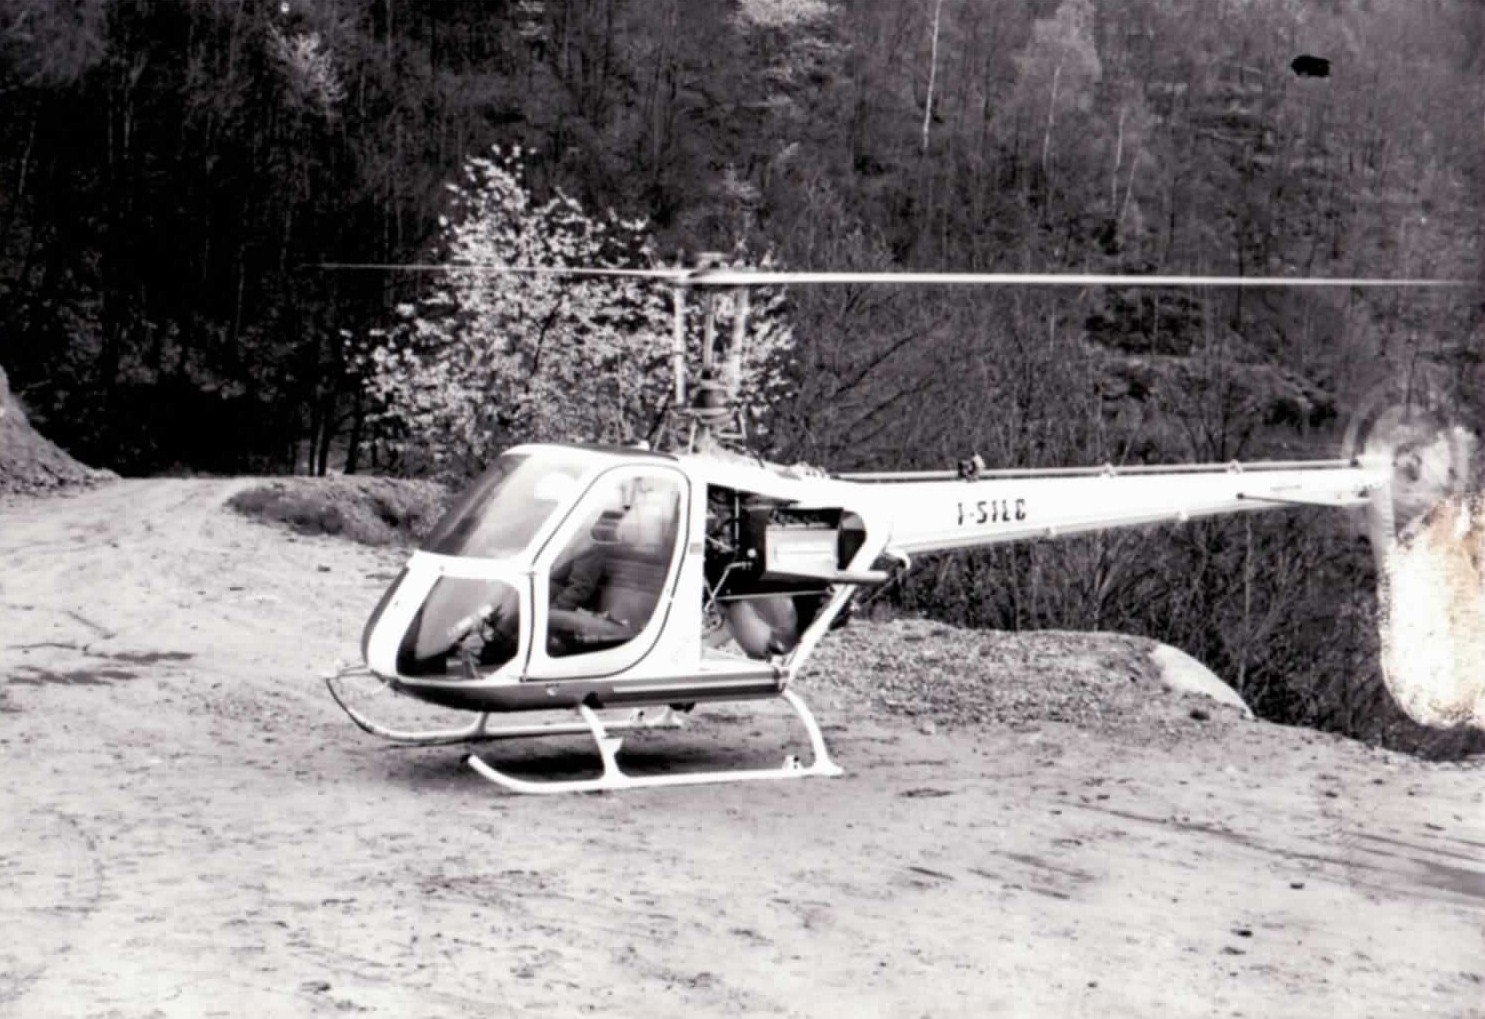 La storia del volo GIANA HELICOPTER-6